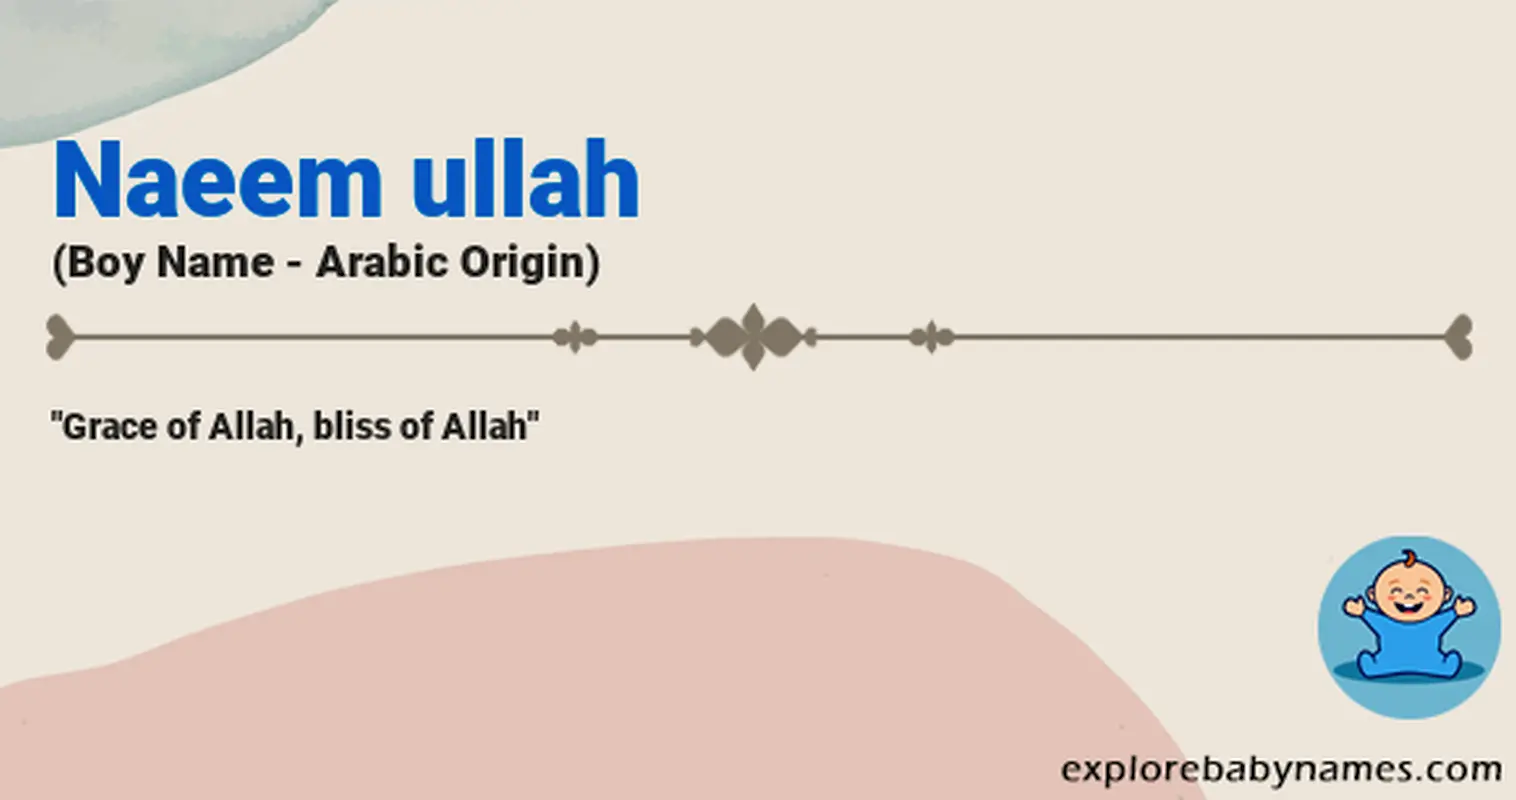 Meaning of Naeem ullah